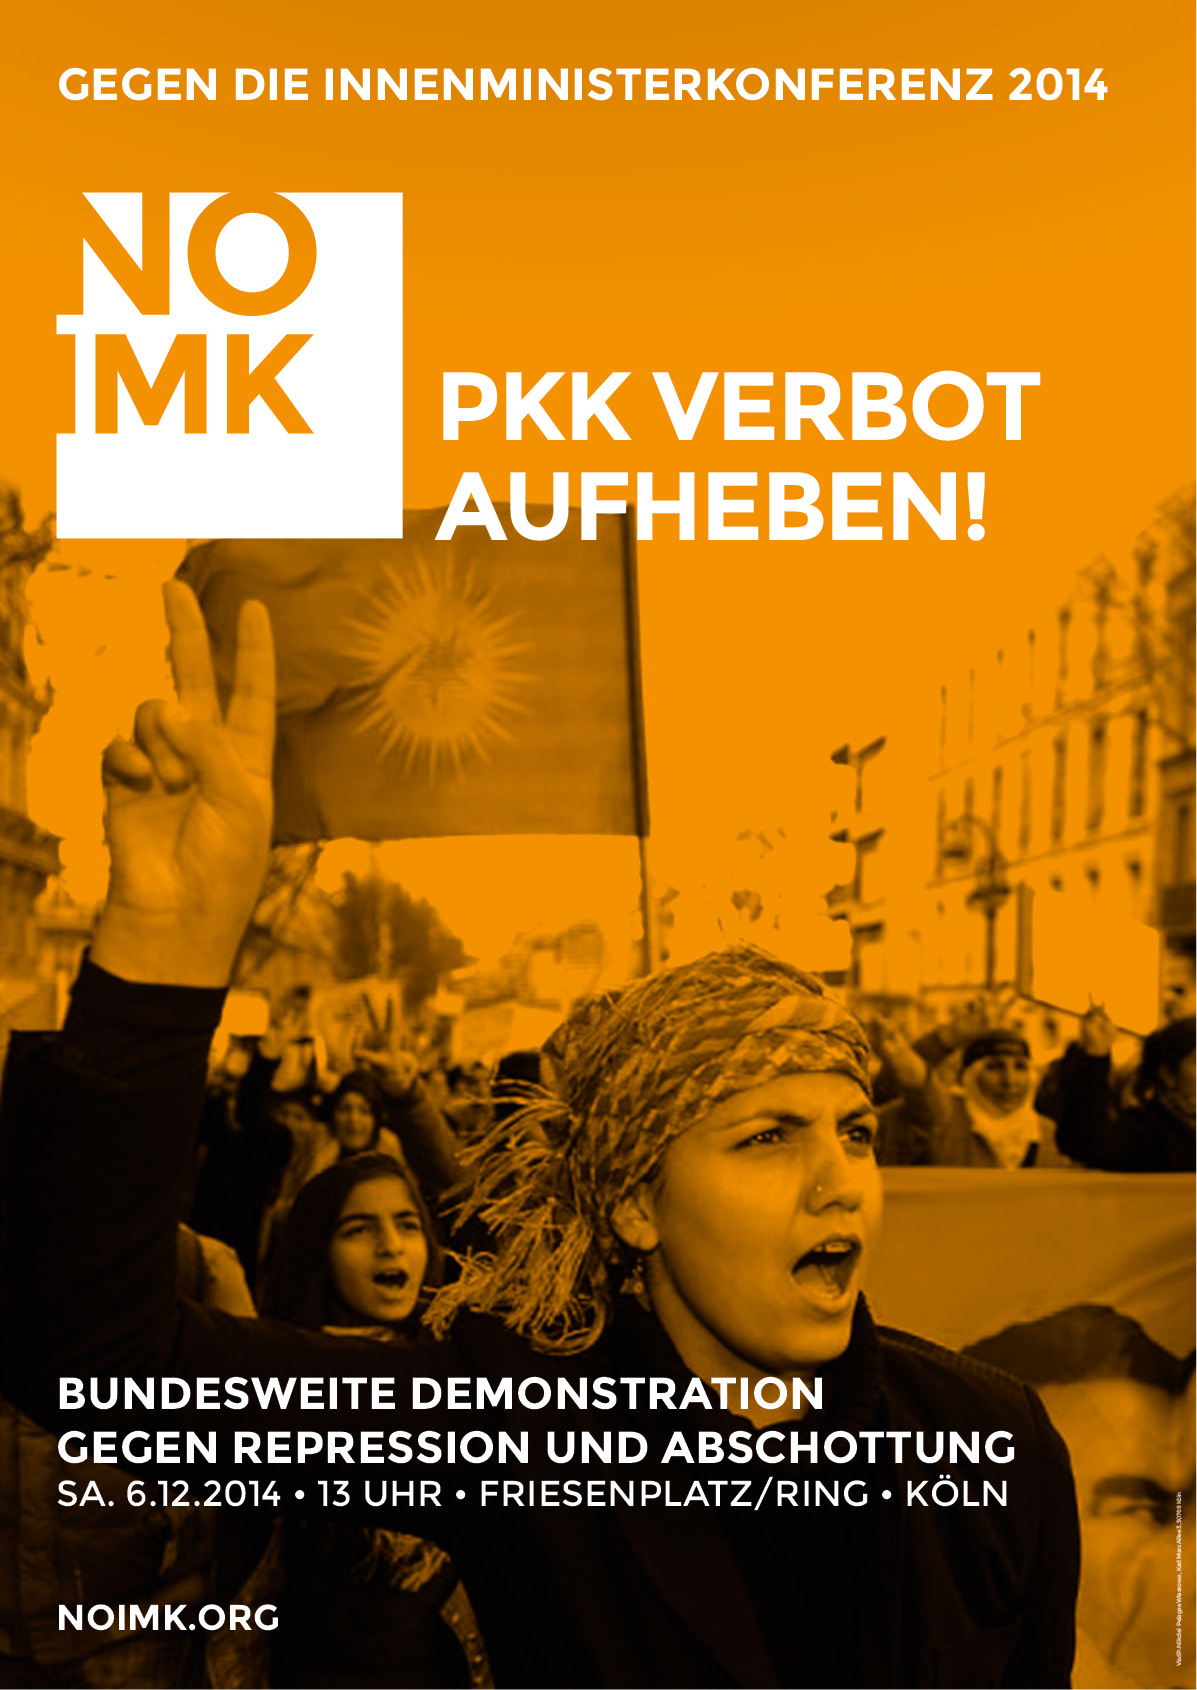 Plakat zur Demo in Köln am 6.12.2014